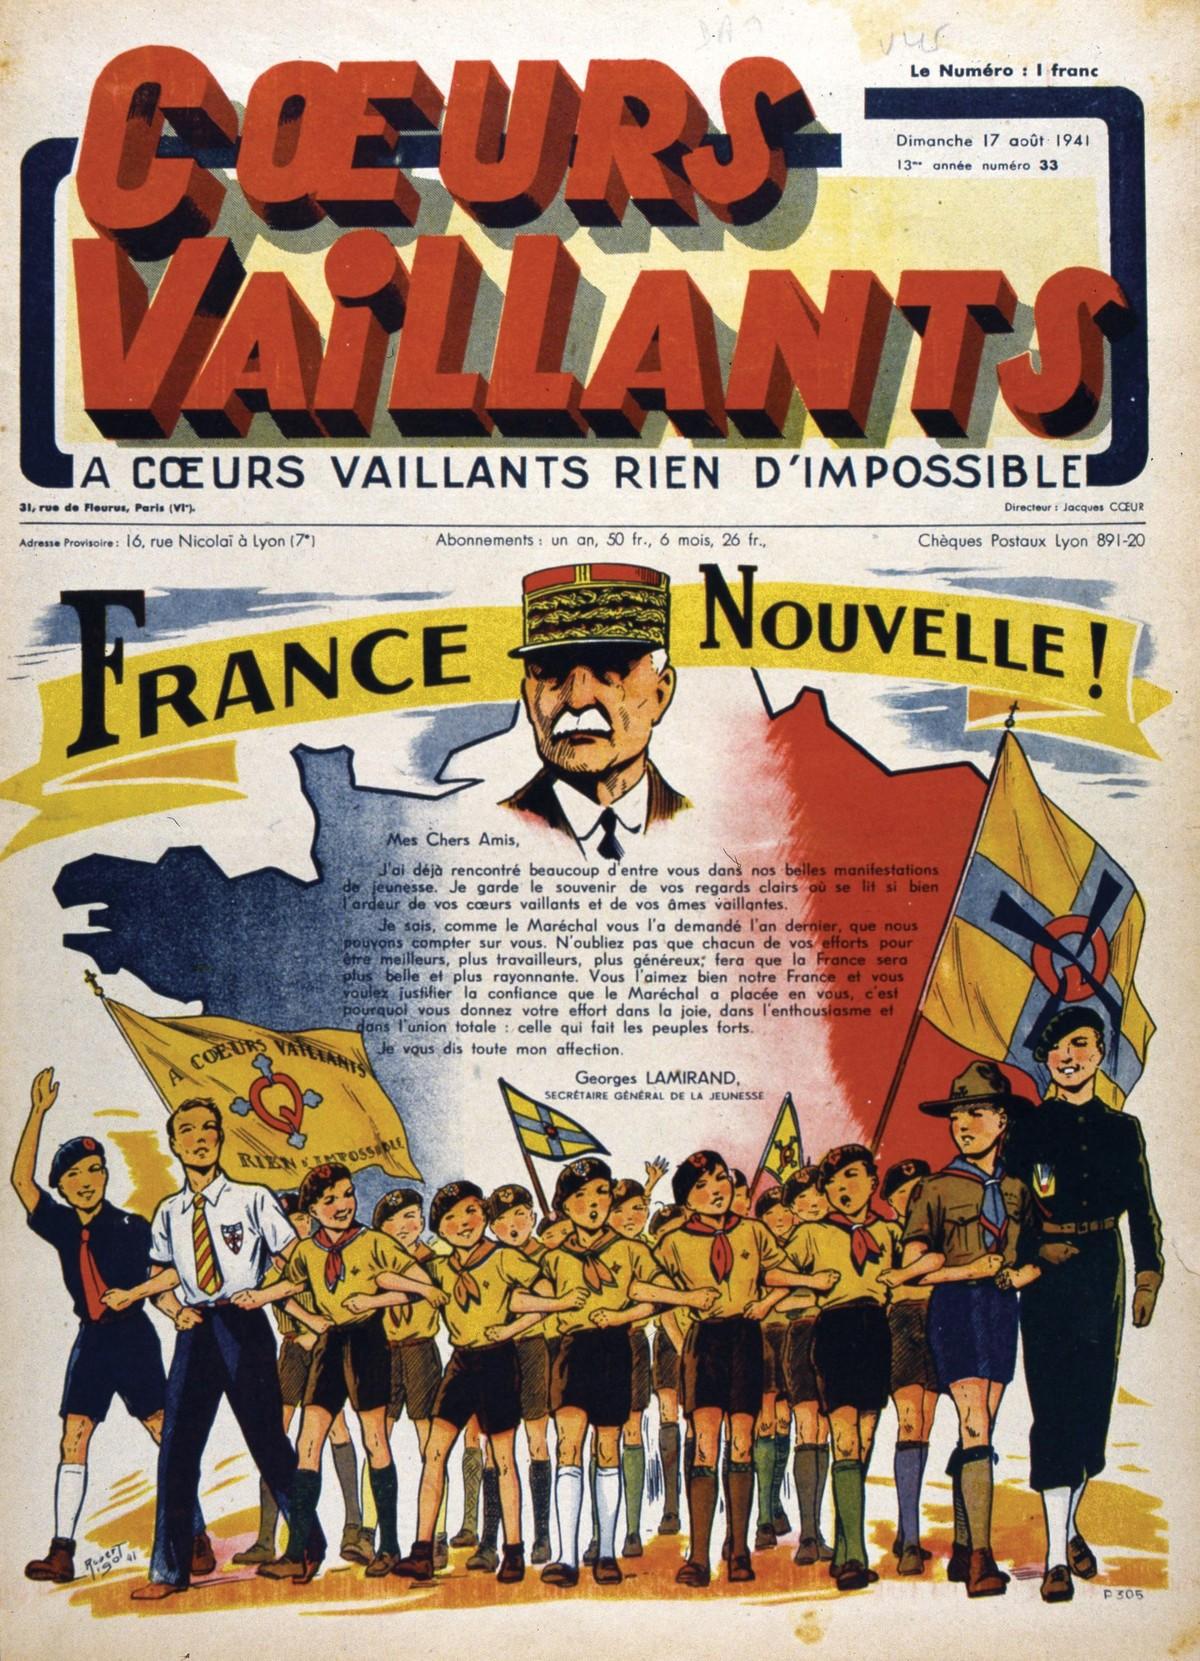 La propagande du régime de Vichy